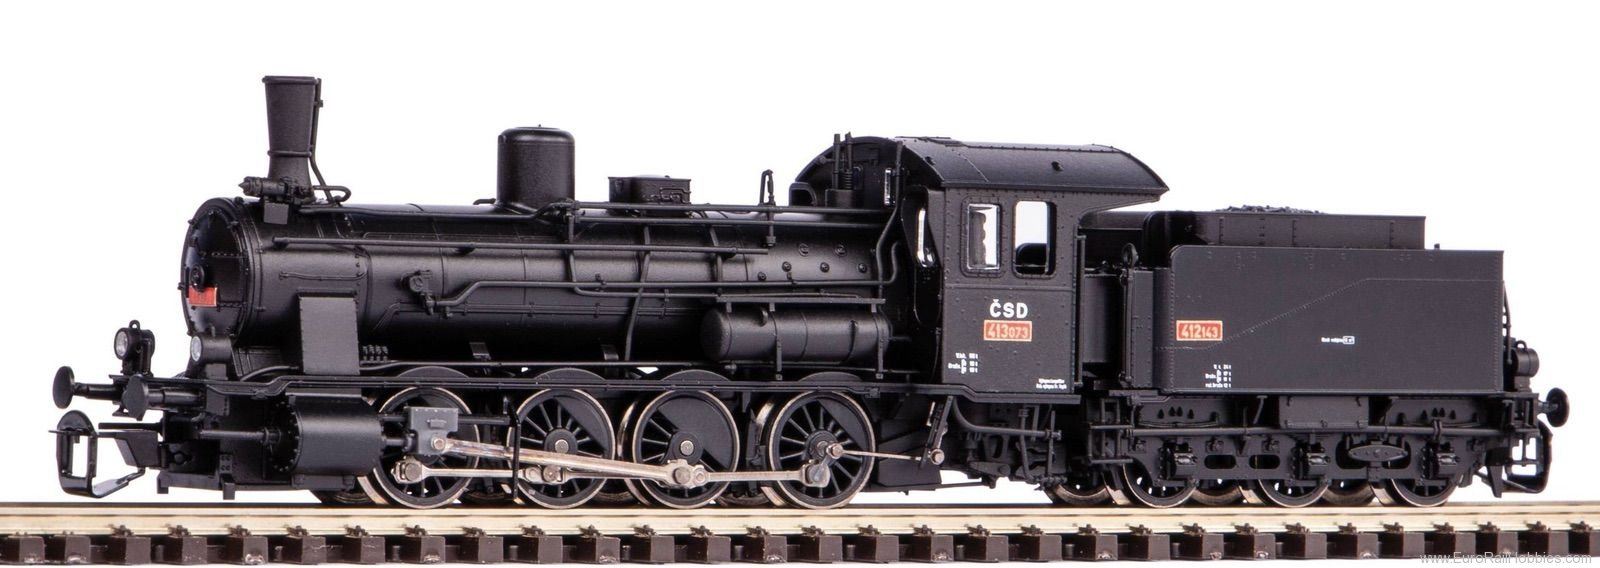 Piko 47103 TT Steam Locomotive 415 CSD III